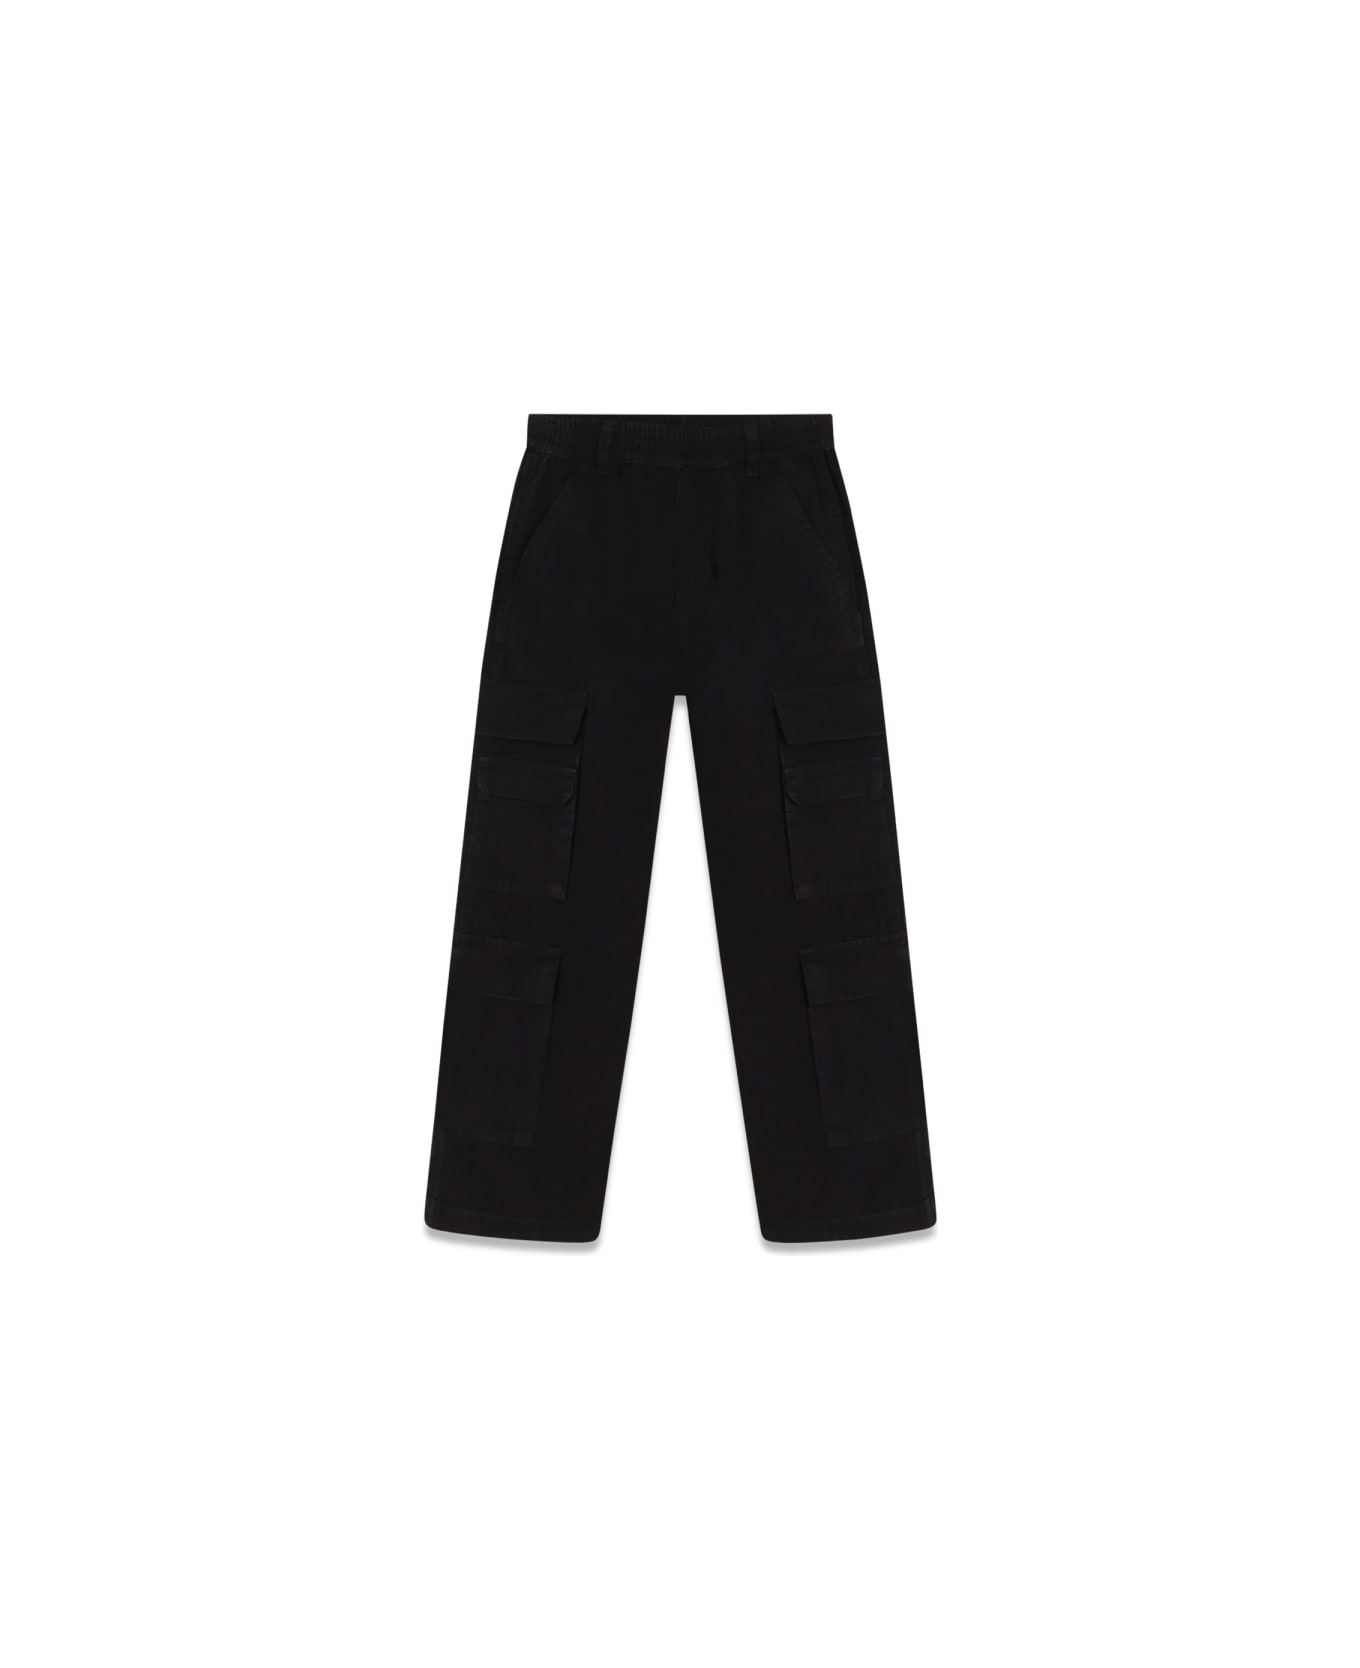 Marc Jacobs Pants - BLACK